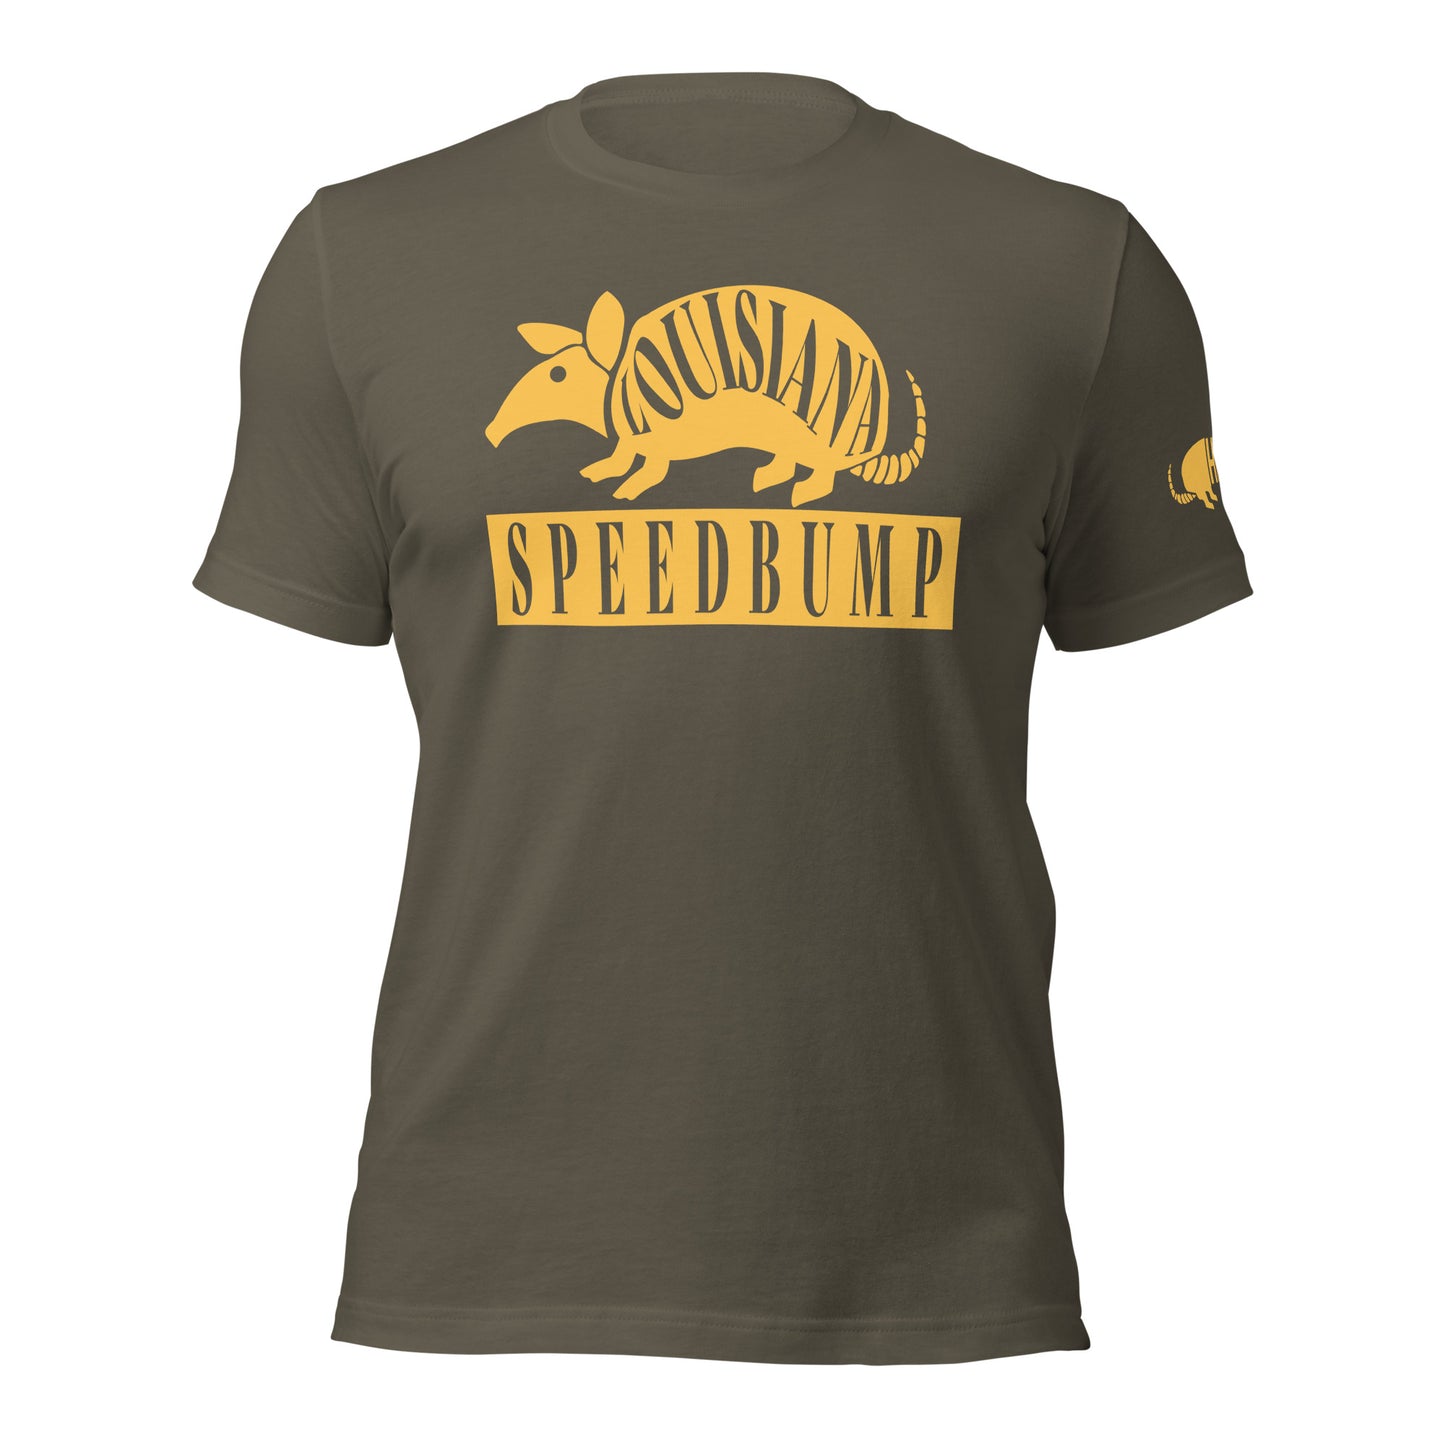 LOUSISANA SPEEDBUMP - BELLA+CANVAS - Unisex t-shirt